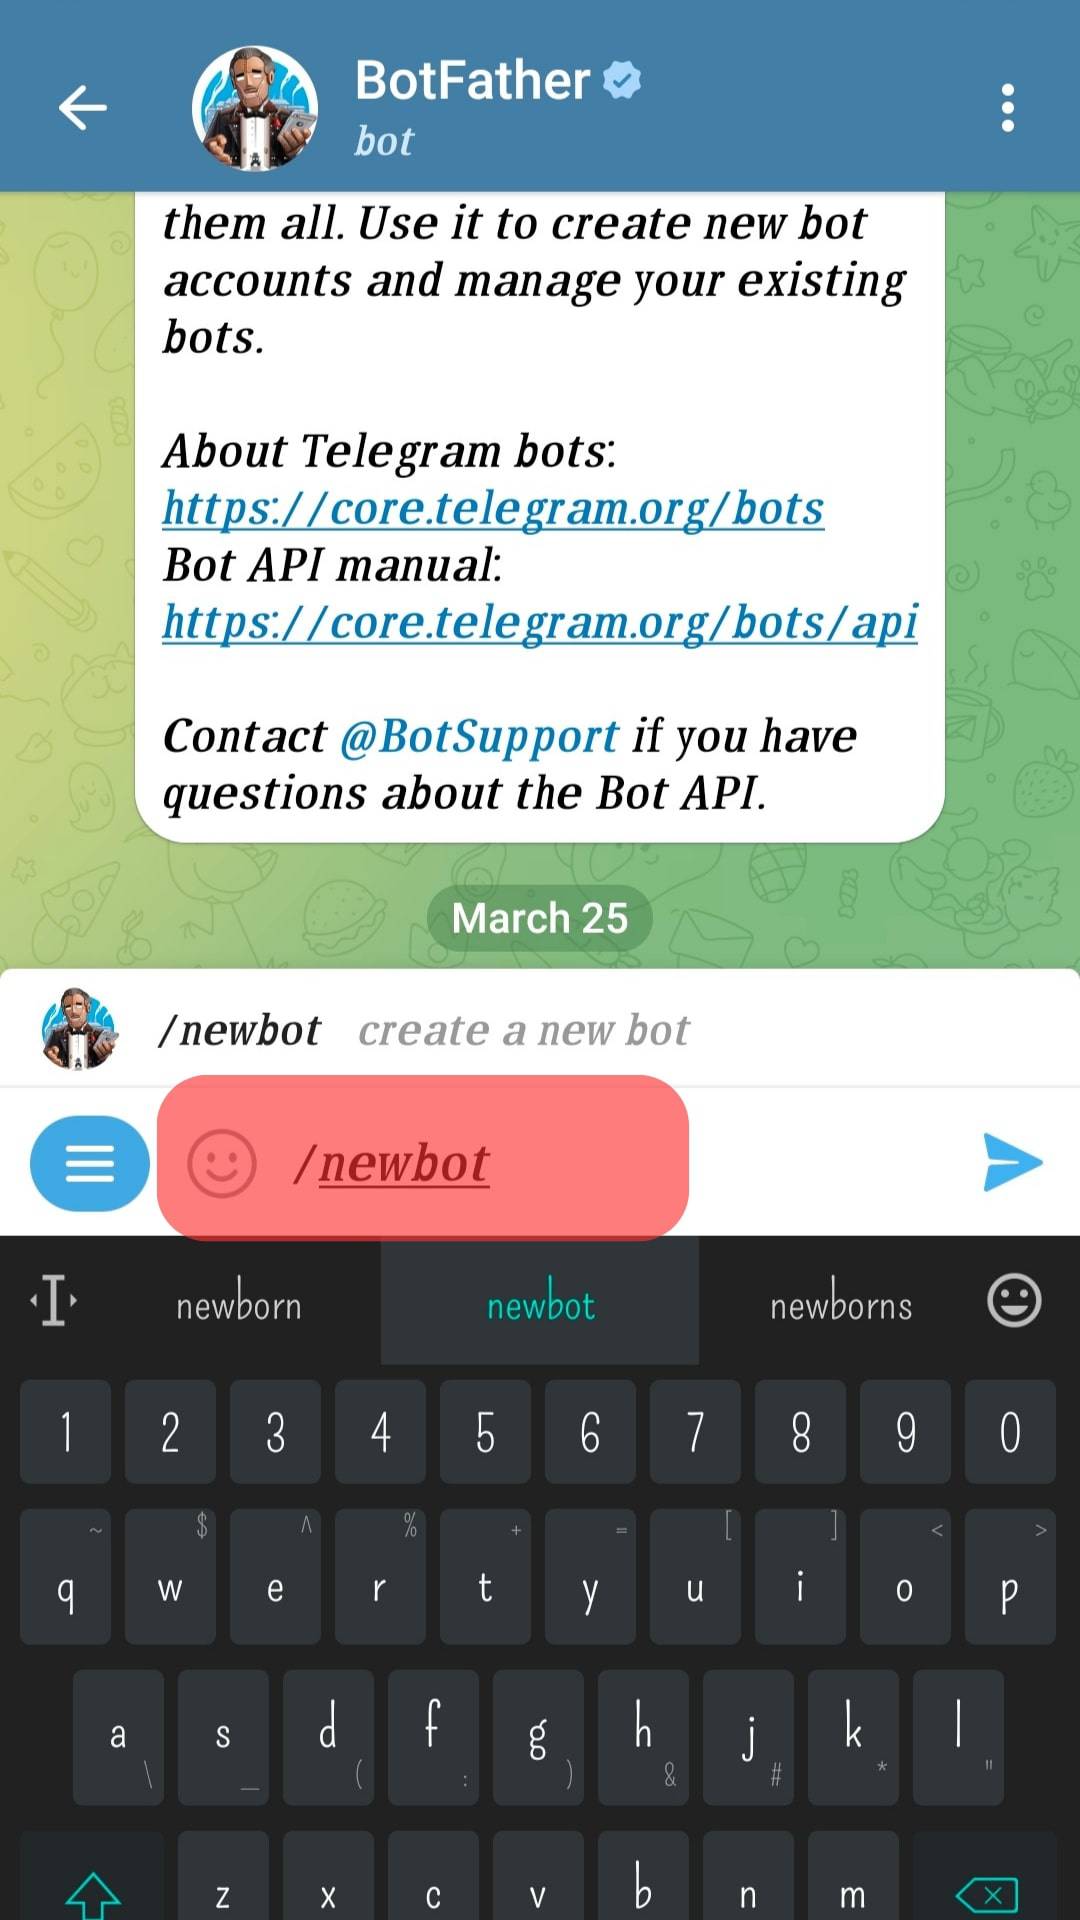 Cómo establecer comandos en Telegram Bot